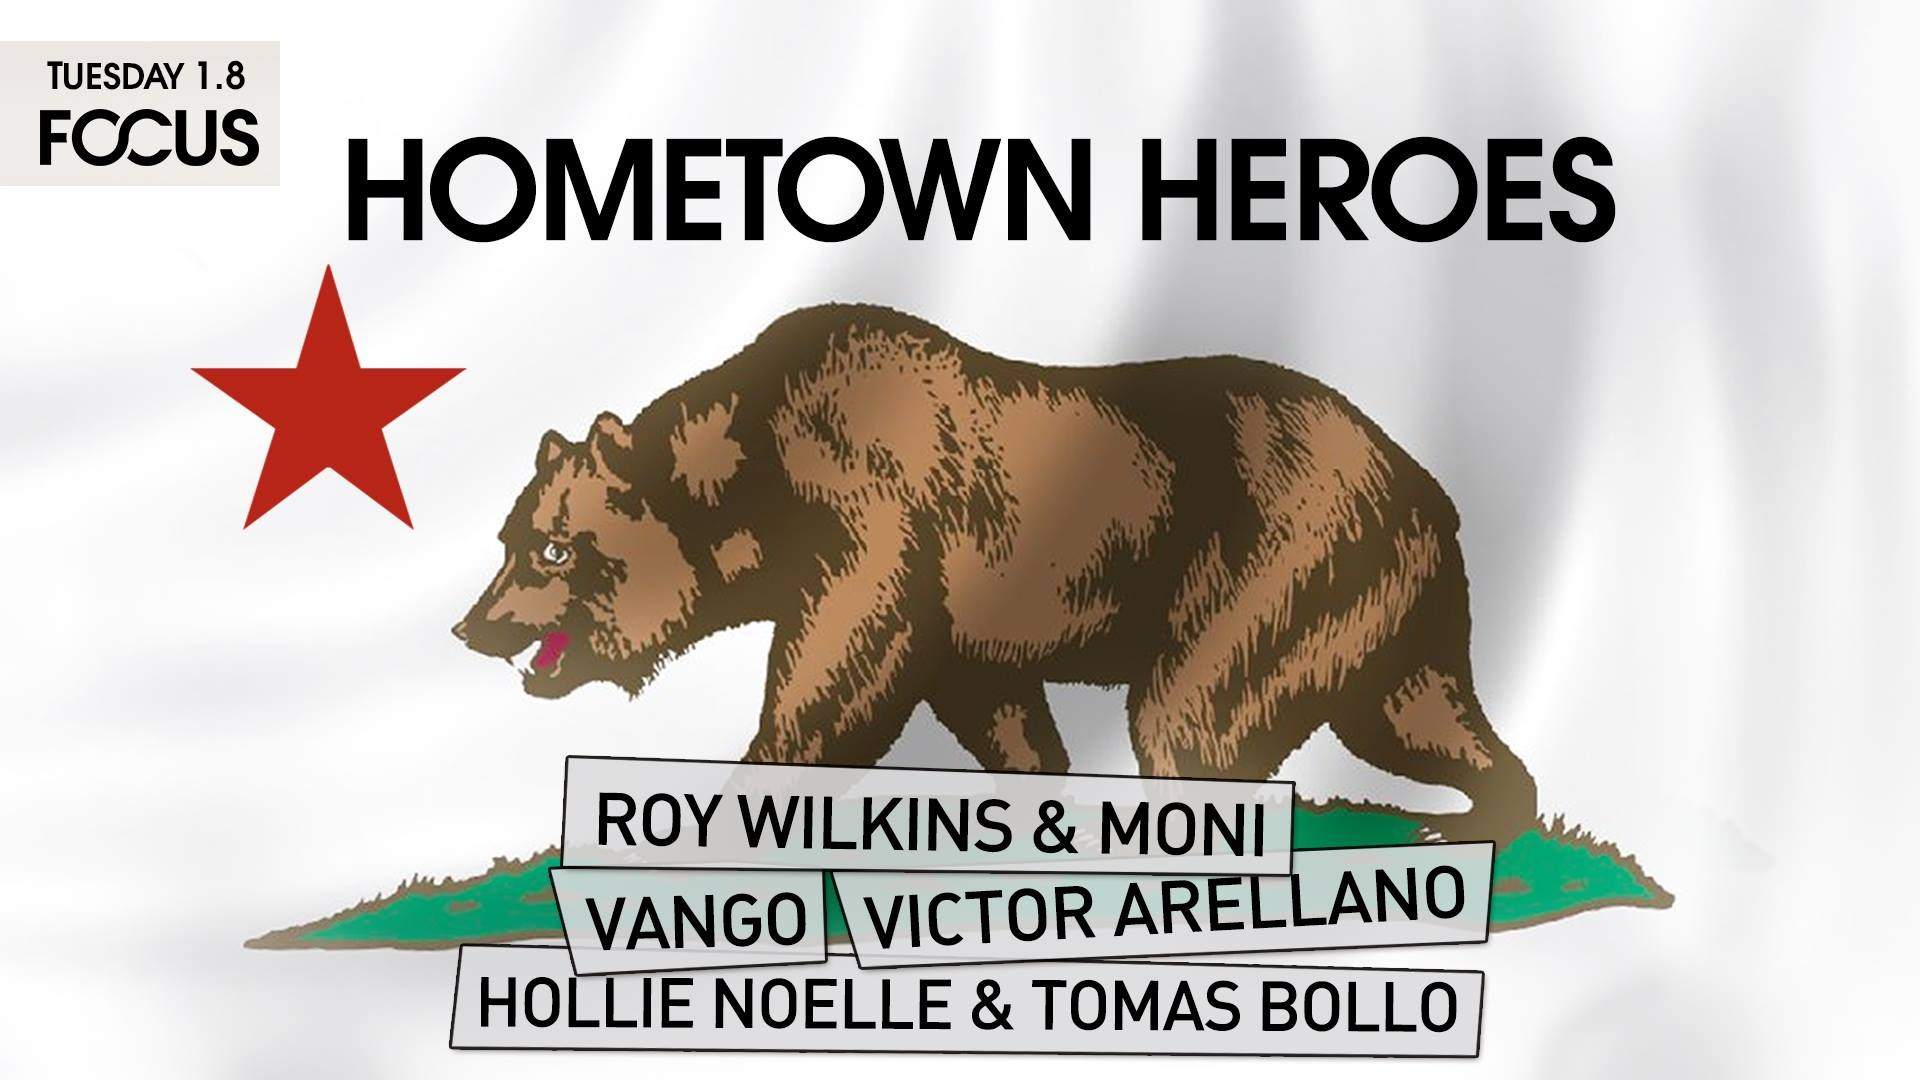 Focus presents: Hometown Heroes - フライヤー表